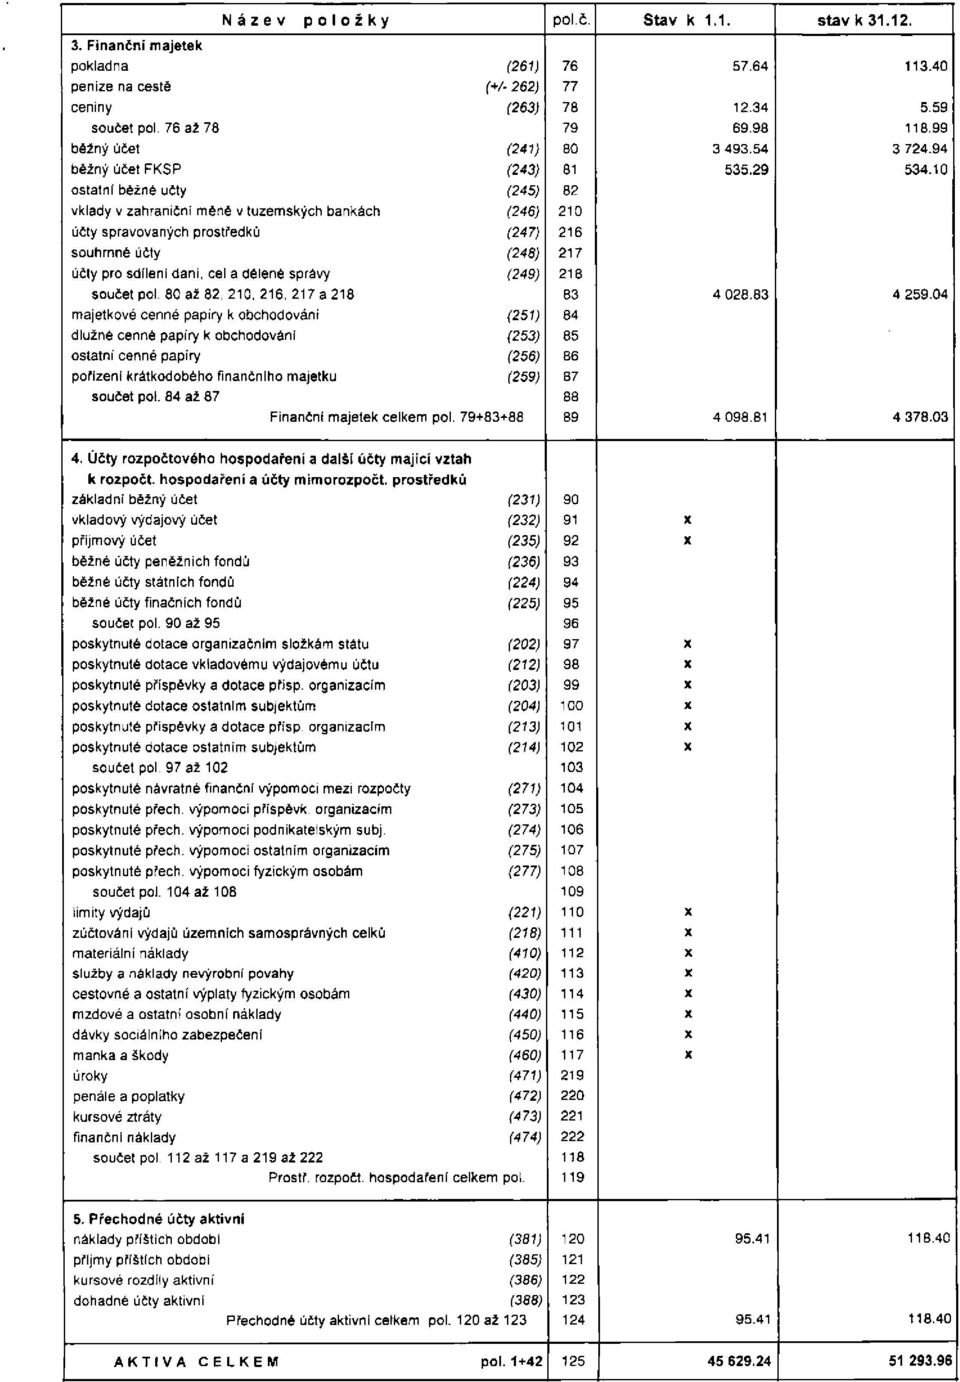 10 ostatní běžné učty (245) 82 vklady v zahraniční měně v tuzemských bankách (246) 210 účty spravovaných prostředků (247) 216 souhrnné účty (248) 217 účty pro sdílení daní, cel a dělené správy (249)